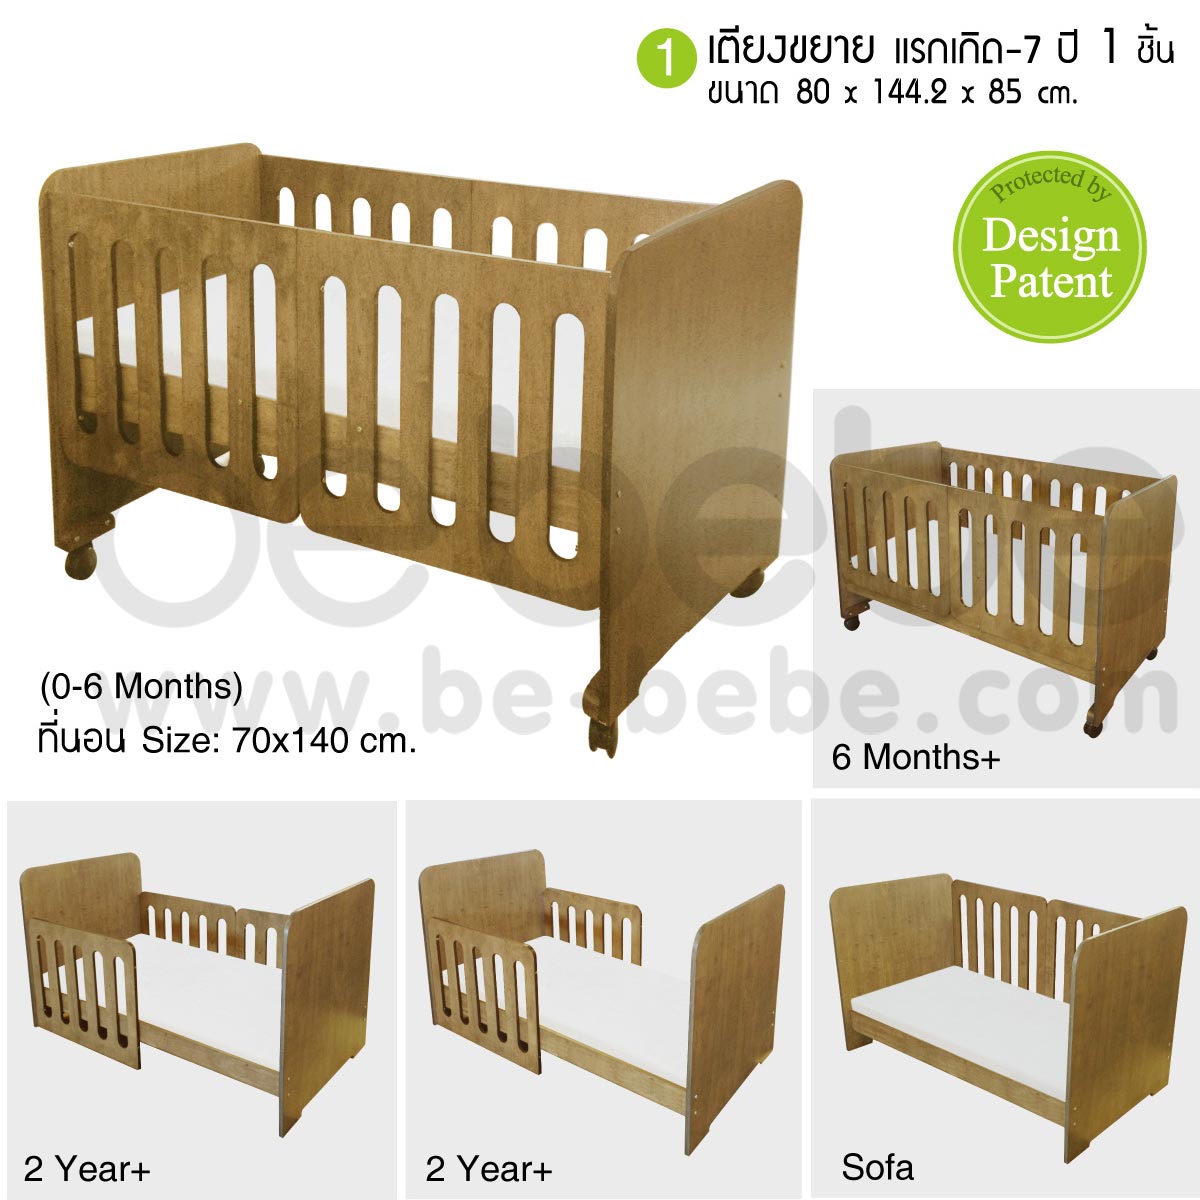 be bebe :ชุดเตียงเด็กแรกเกิด-7ปี (70x140)ปรับเป็นโซฟาได้+ที่นอนฟองน้ำ+ชุดเครื่องนอน /น้ำตาลอ่อน